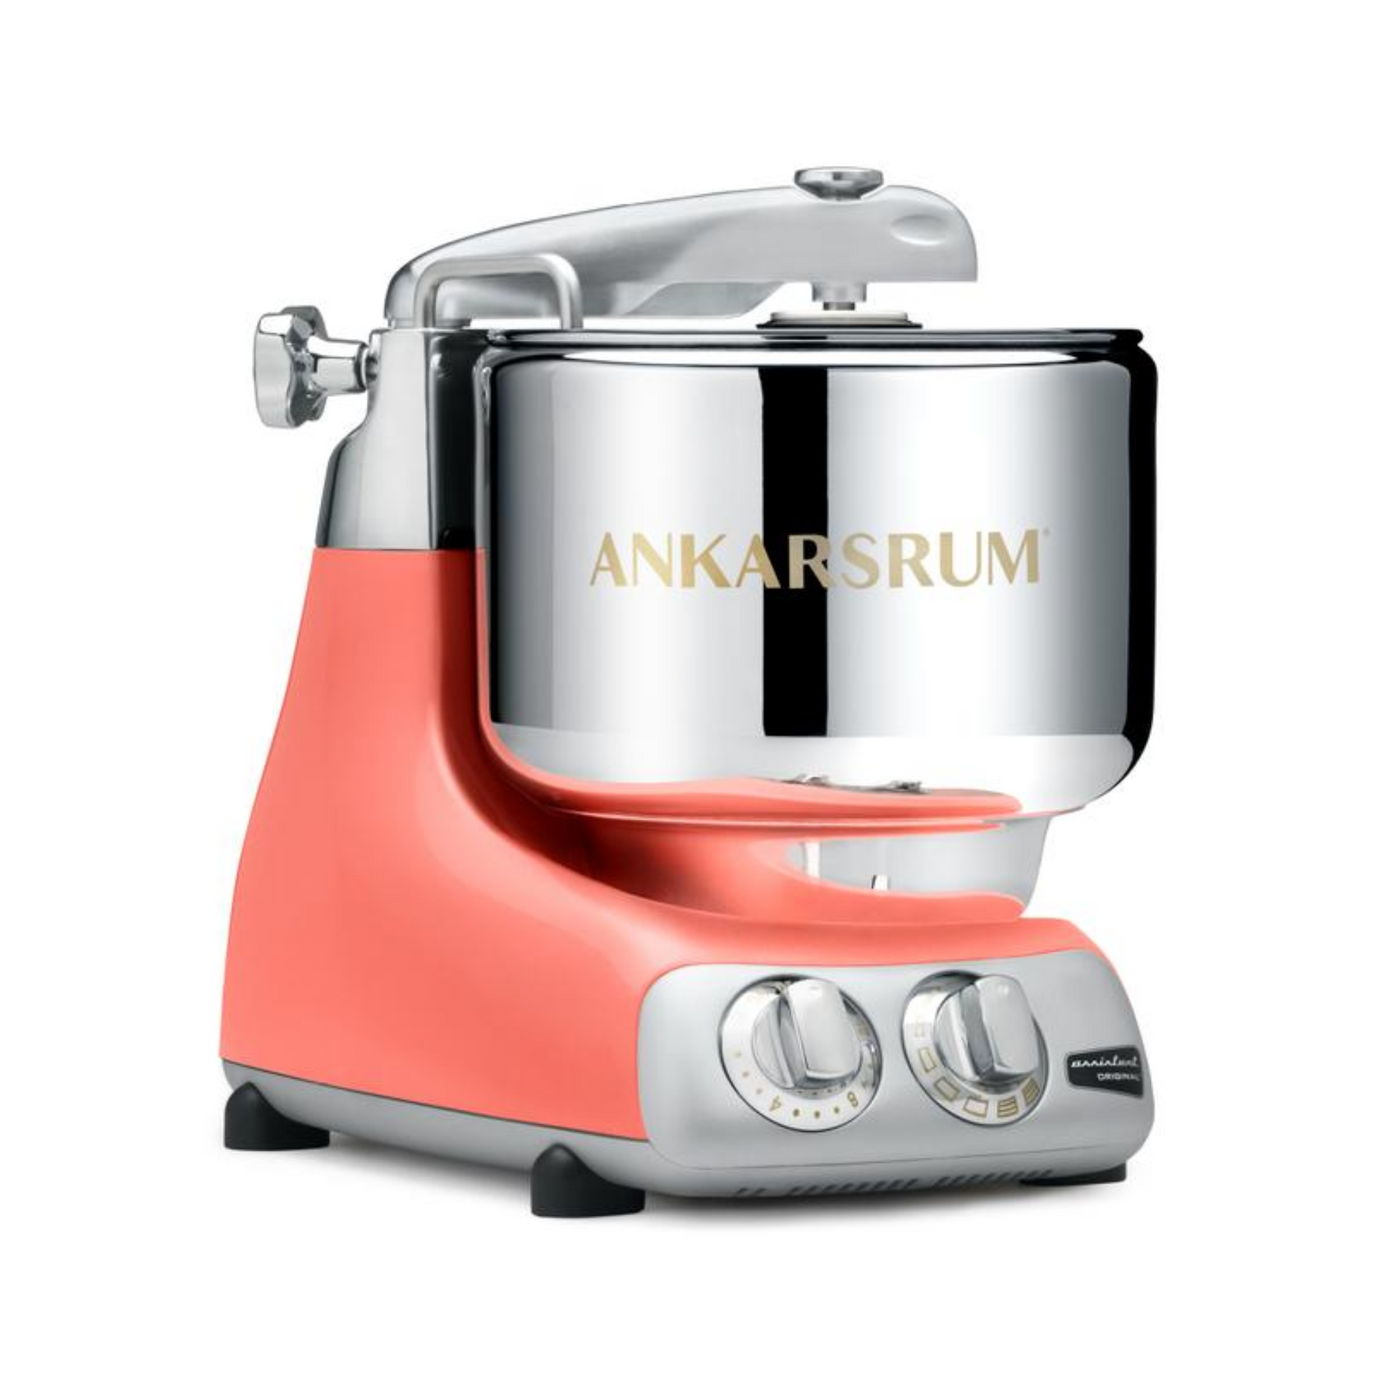 Ankarsrum Original Basic Kitchen Machine / Stand Mixer, 7.4-qt - Kitchen Universe